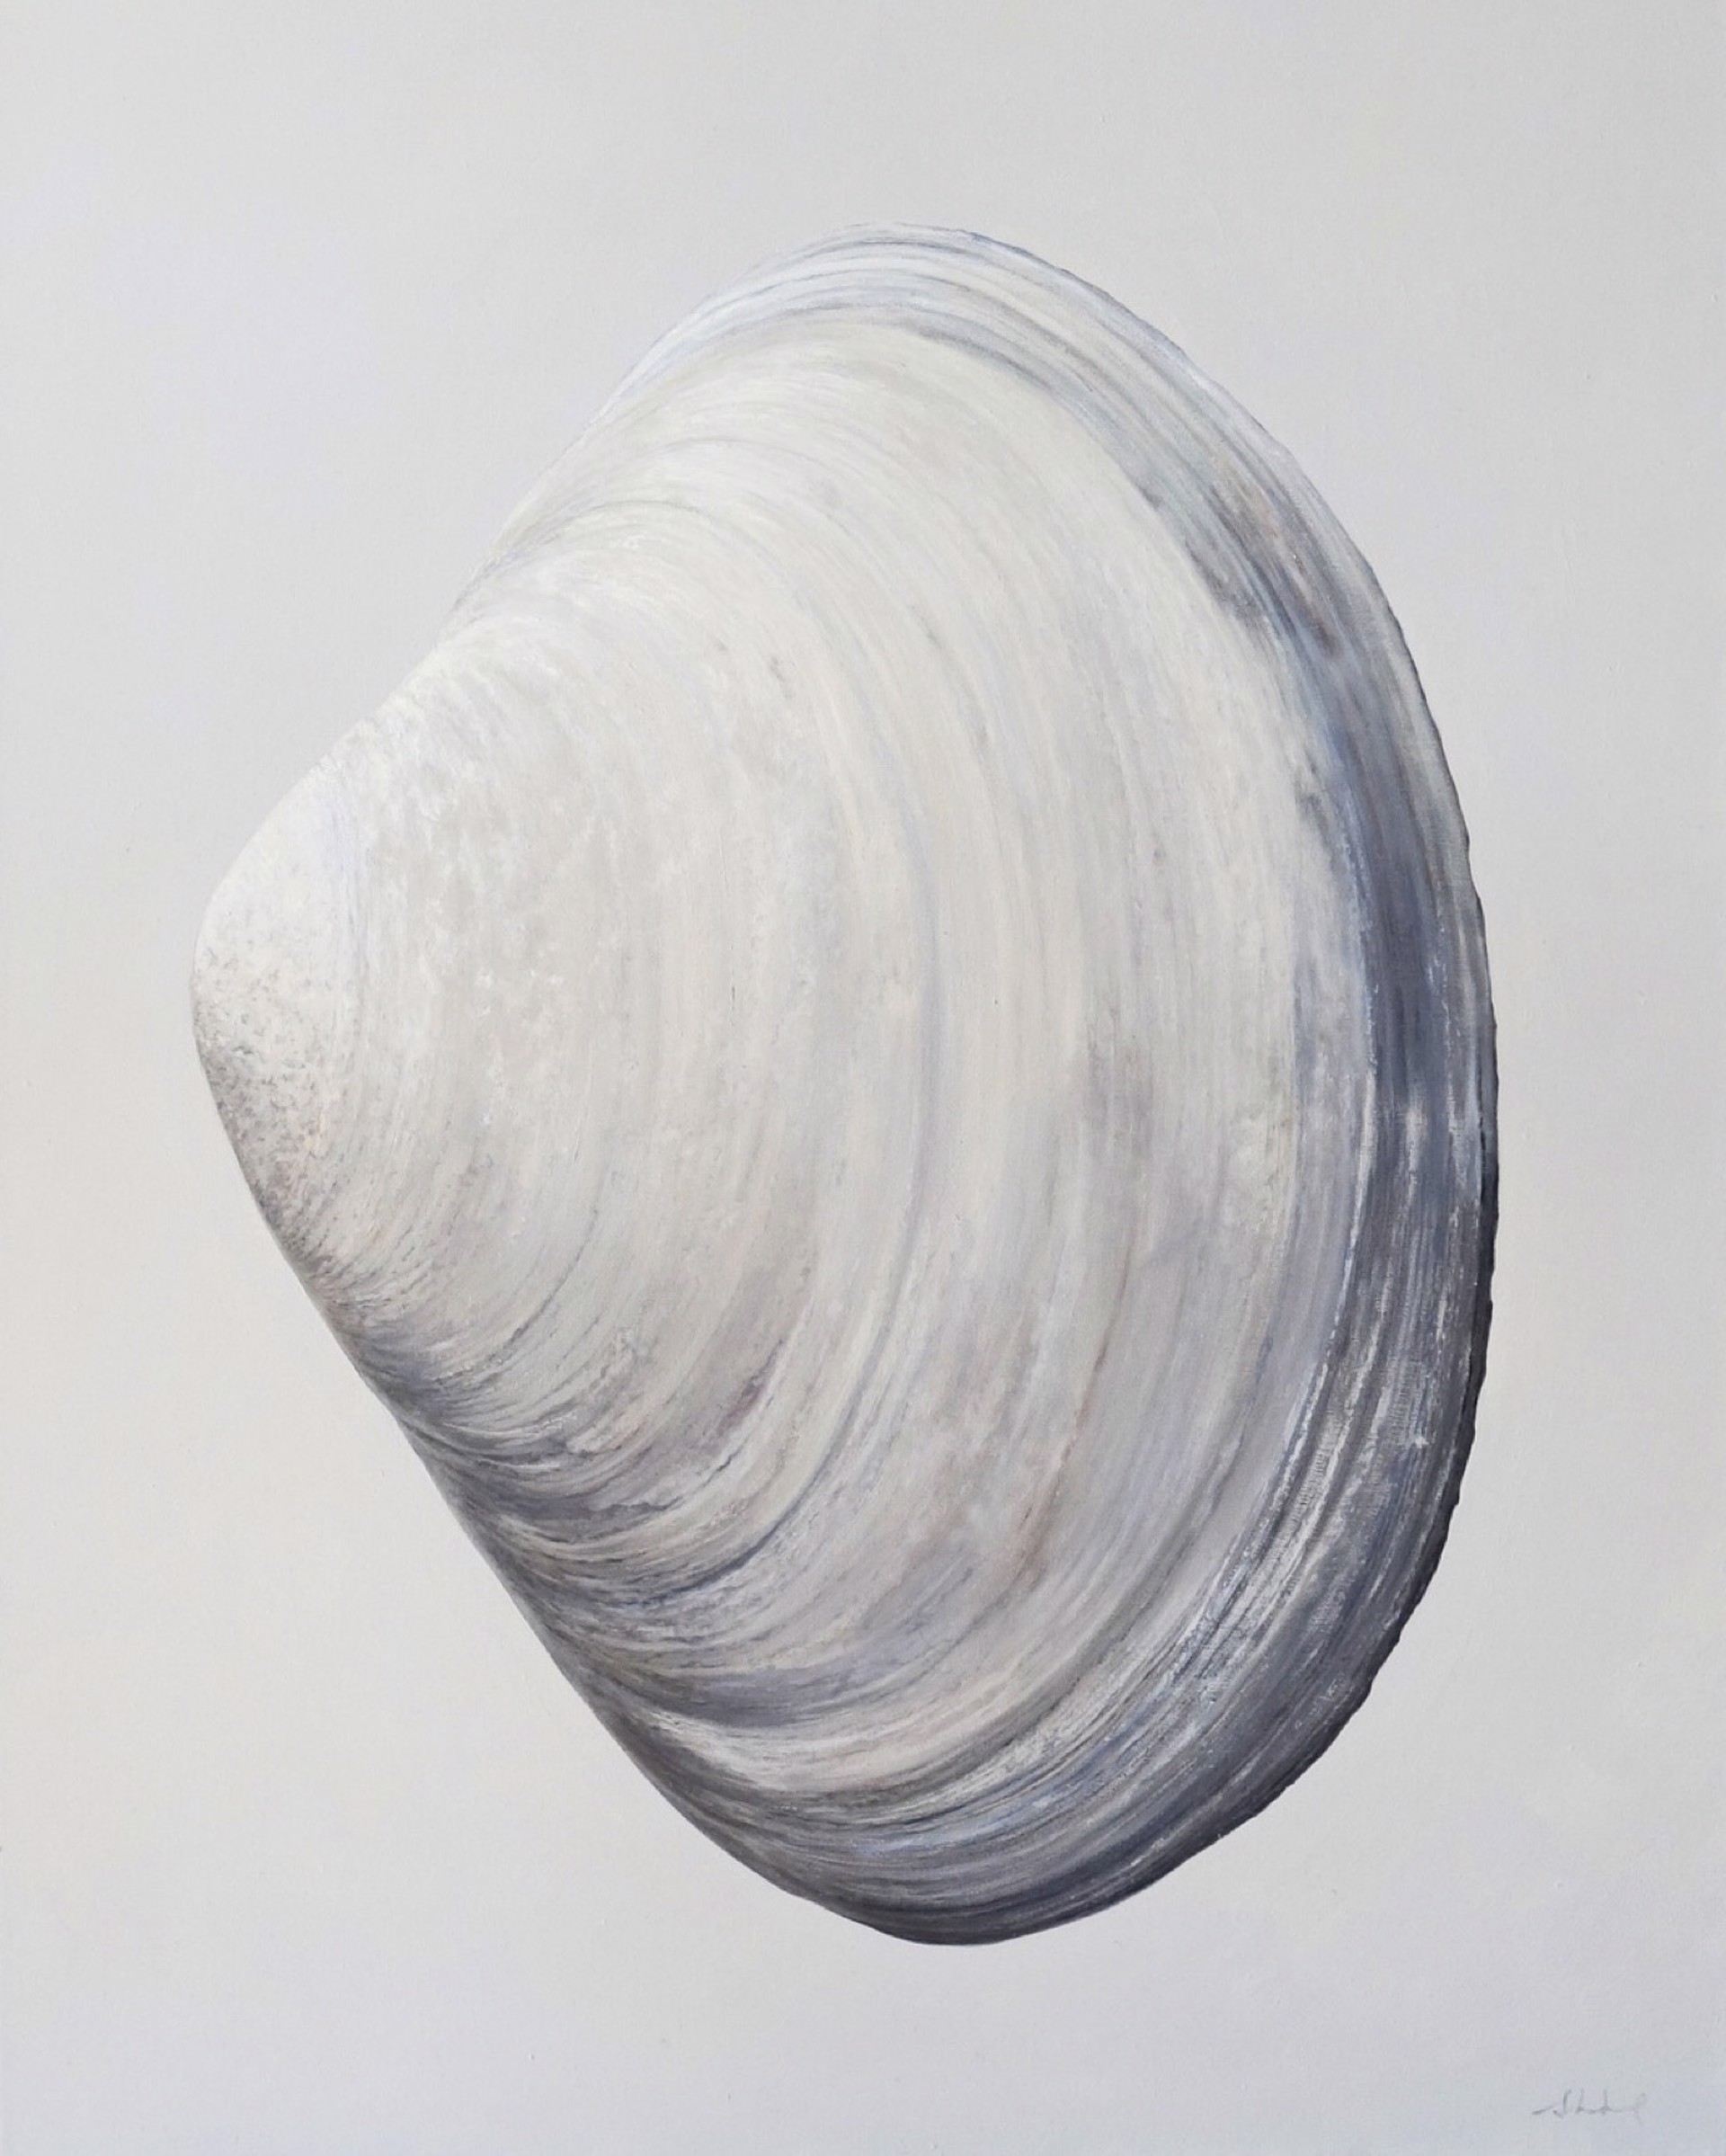 Outer Clam Shell by Sarah Verardo